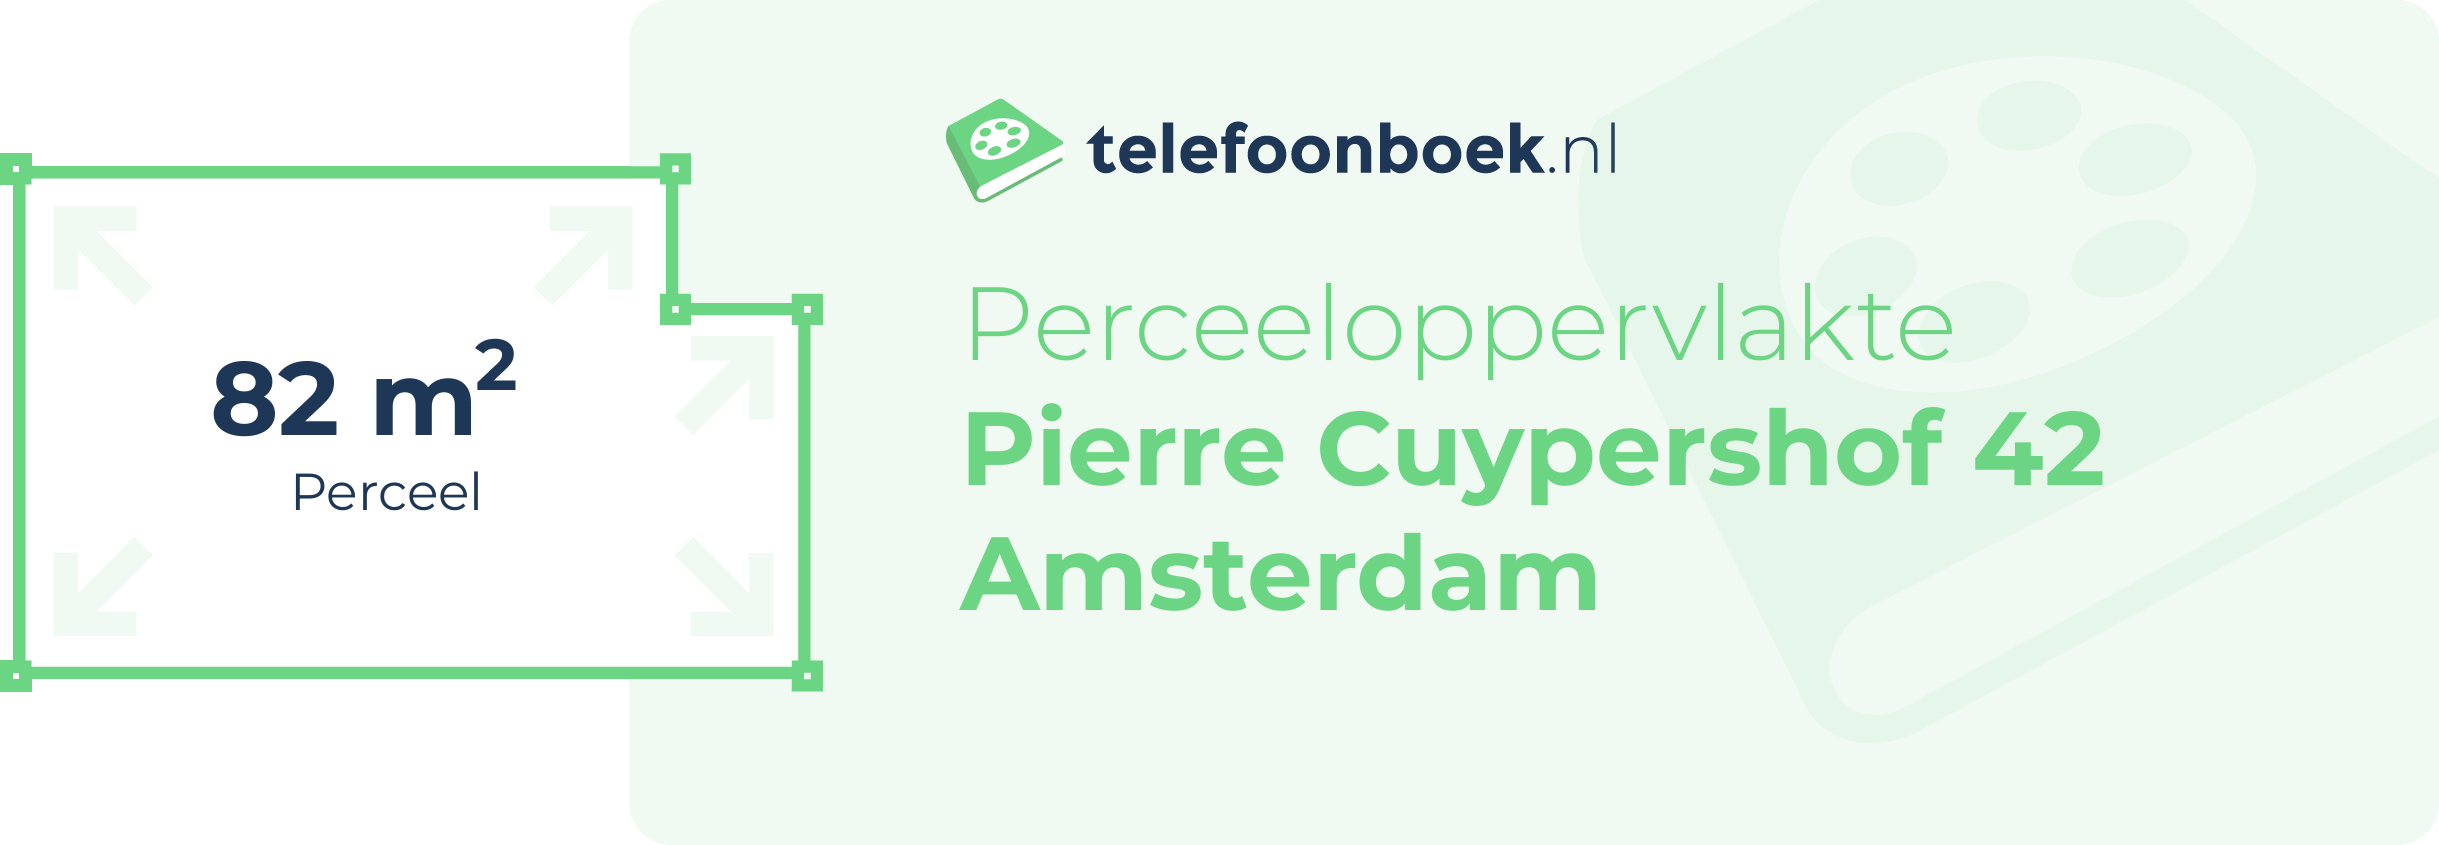 Perceeloppervlakte Pierre Cuypershof 42 Amsterdam